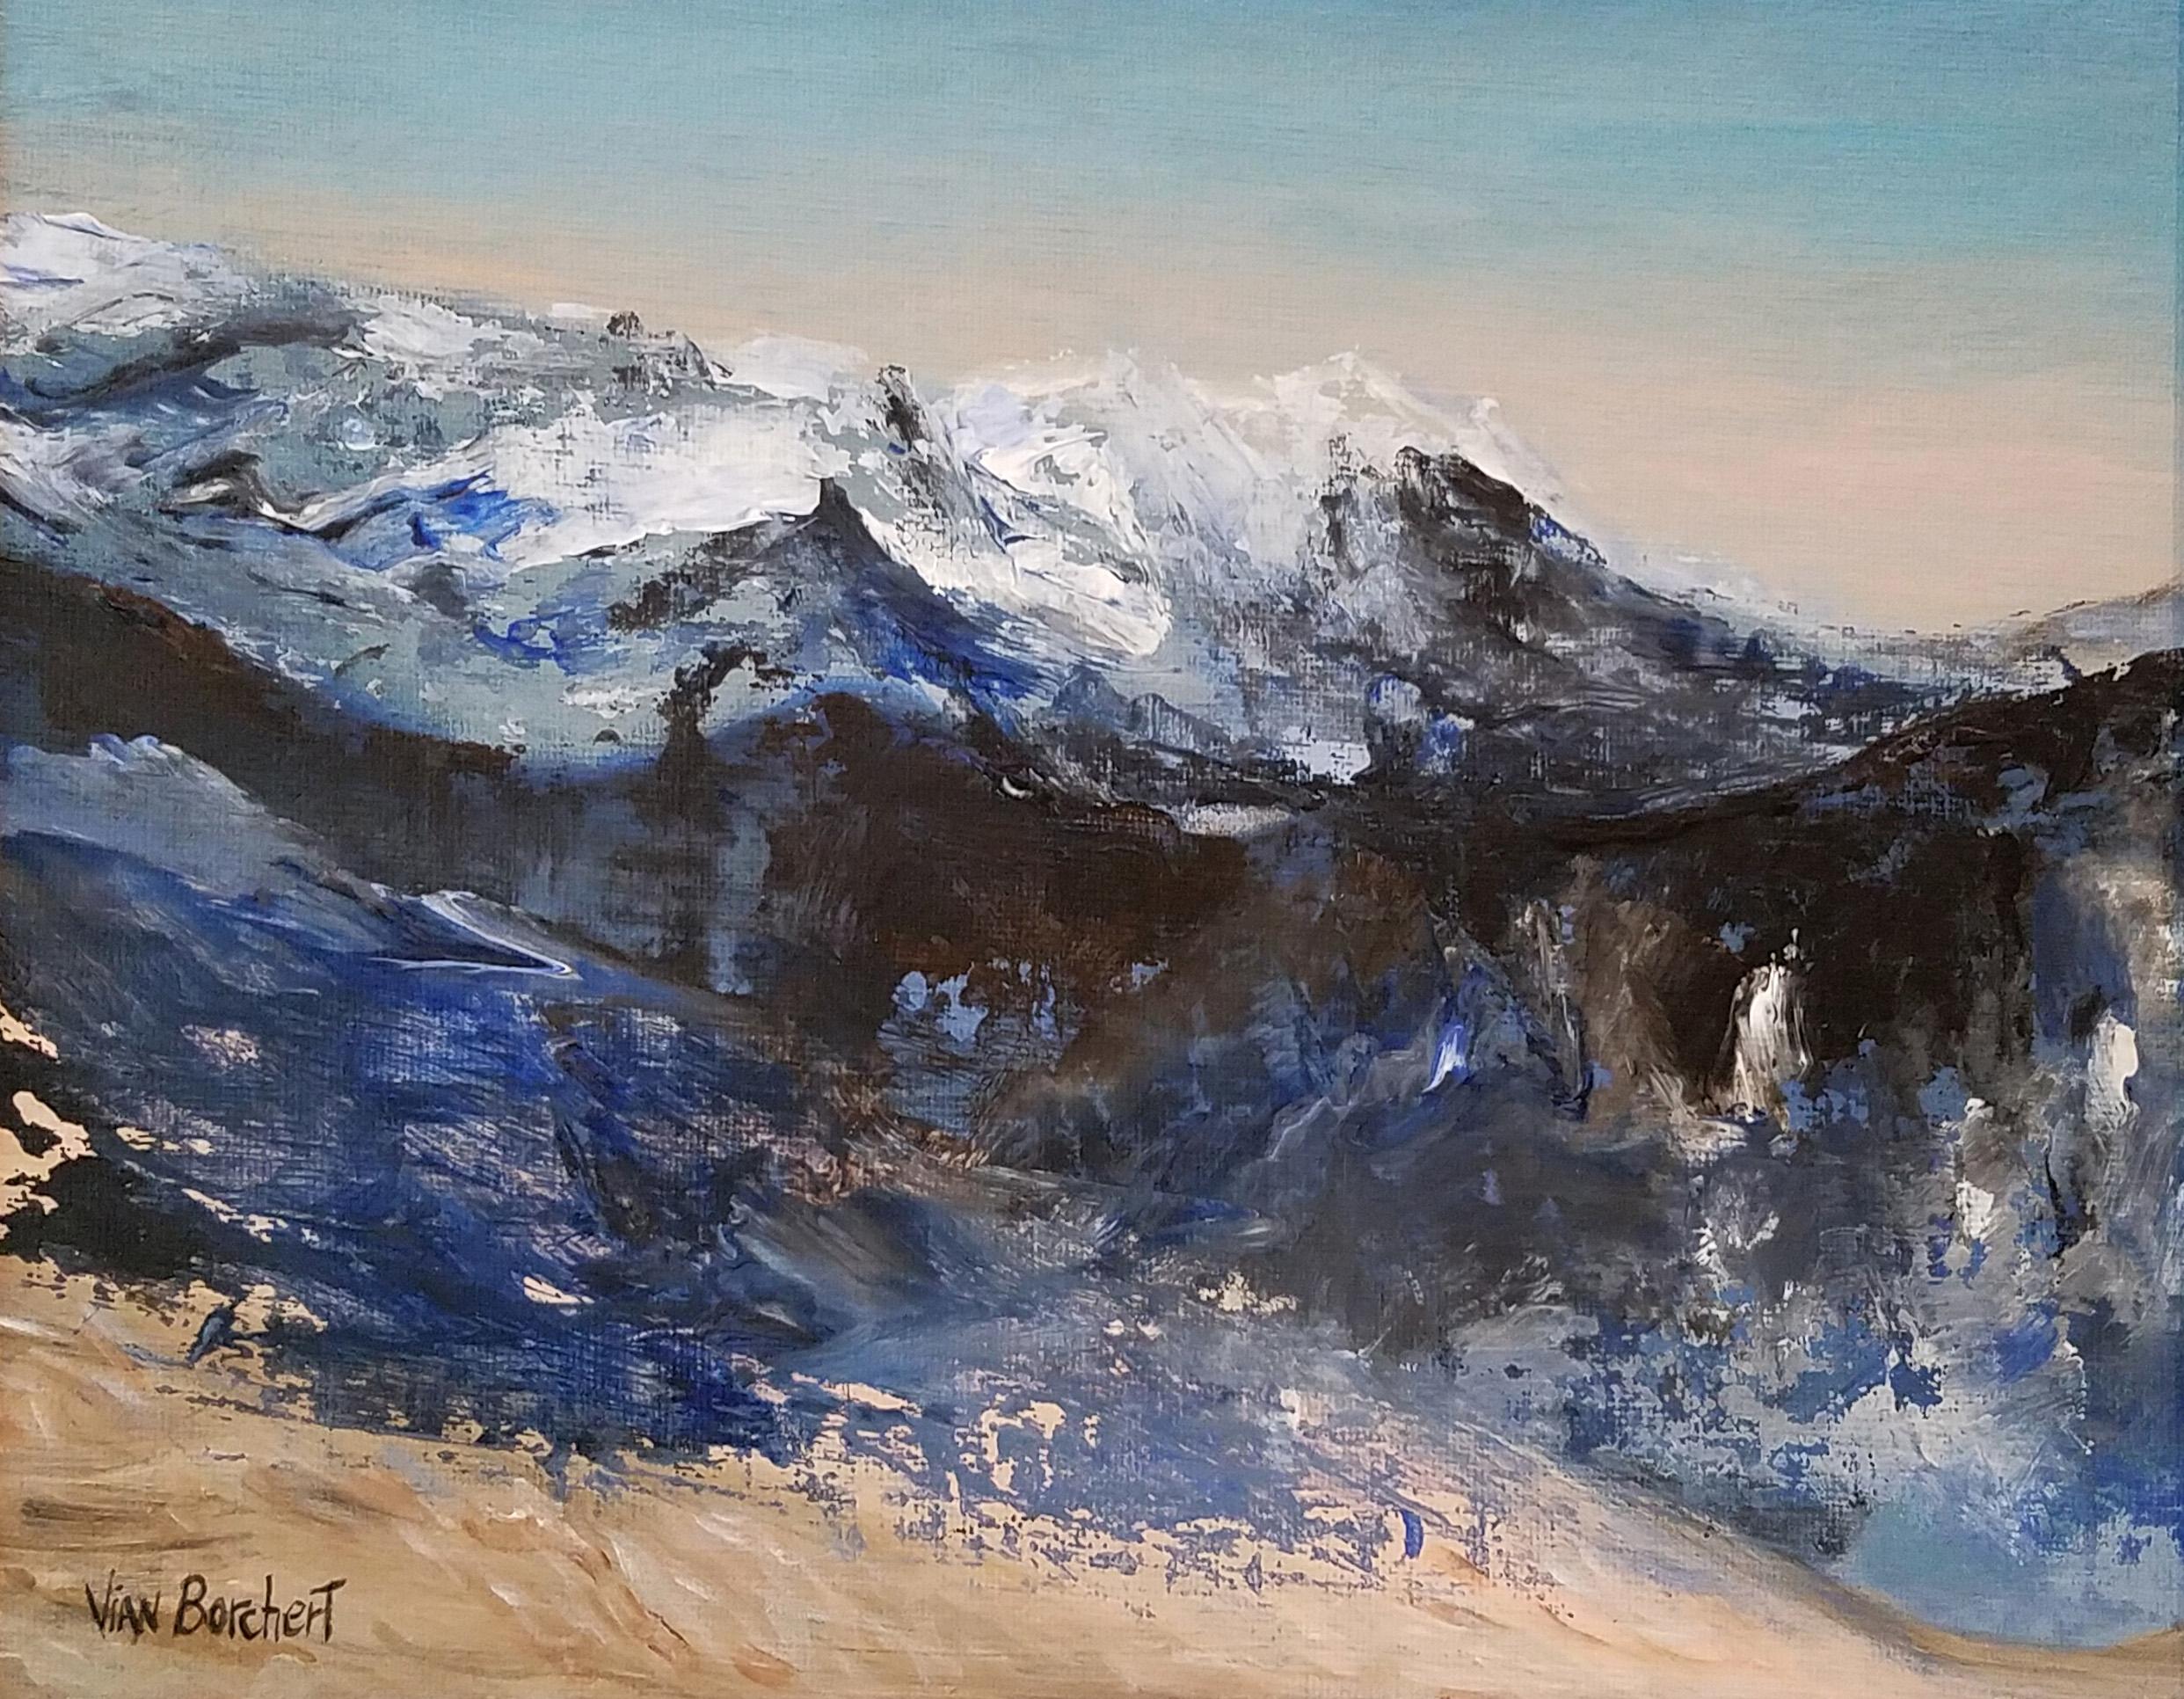 Landscape Painting Vian Borchert - Montagnes de neige - Peinture de montagnes de neige, peinture de neige, montagnes de neige, blanc